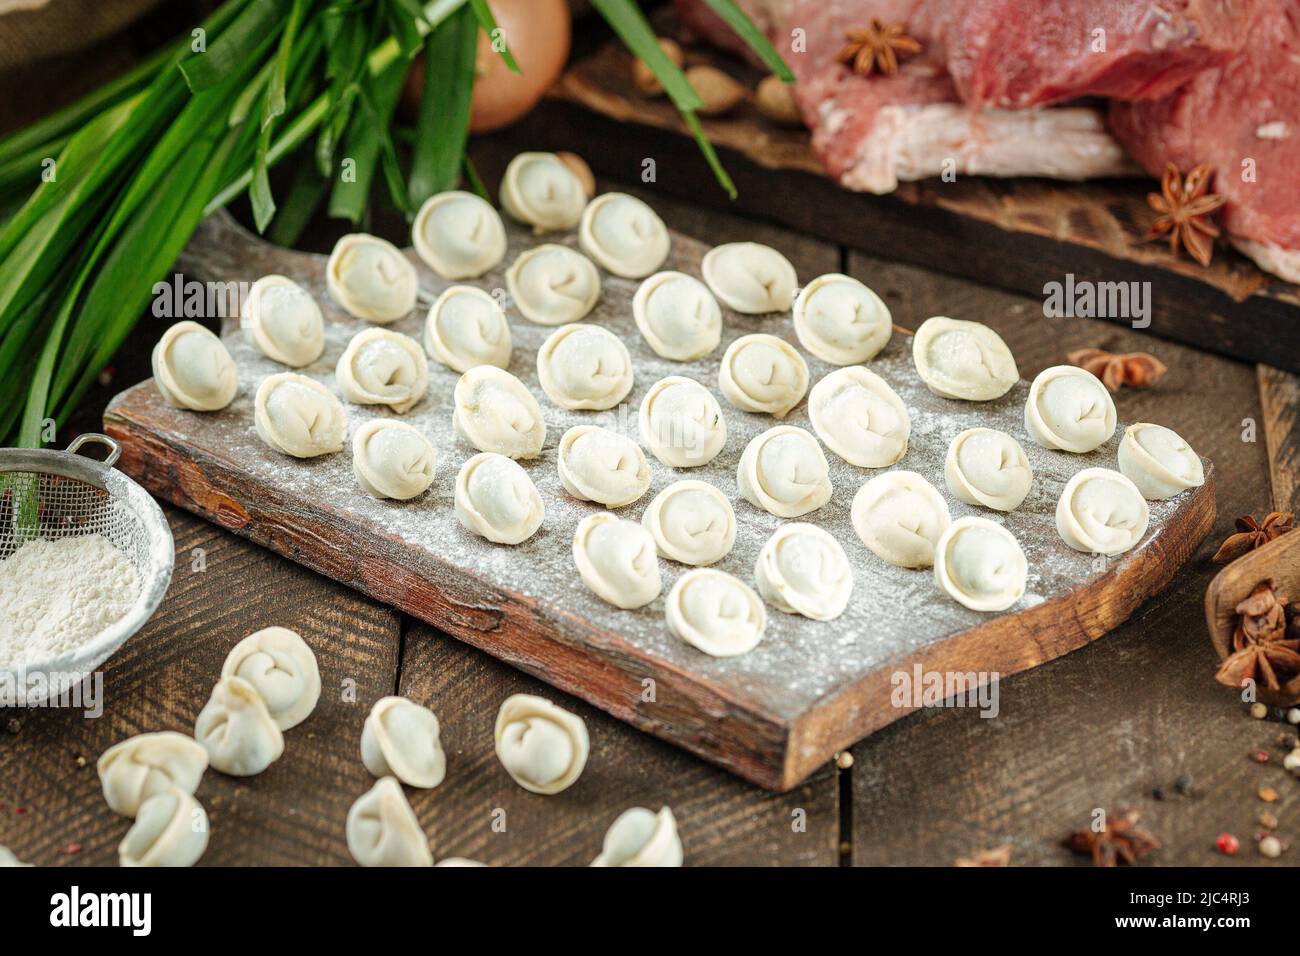 Semi finished pelmeni dumplings Stock Photo